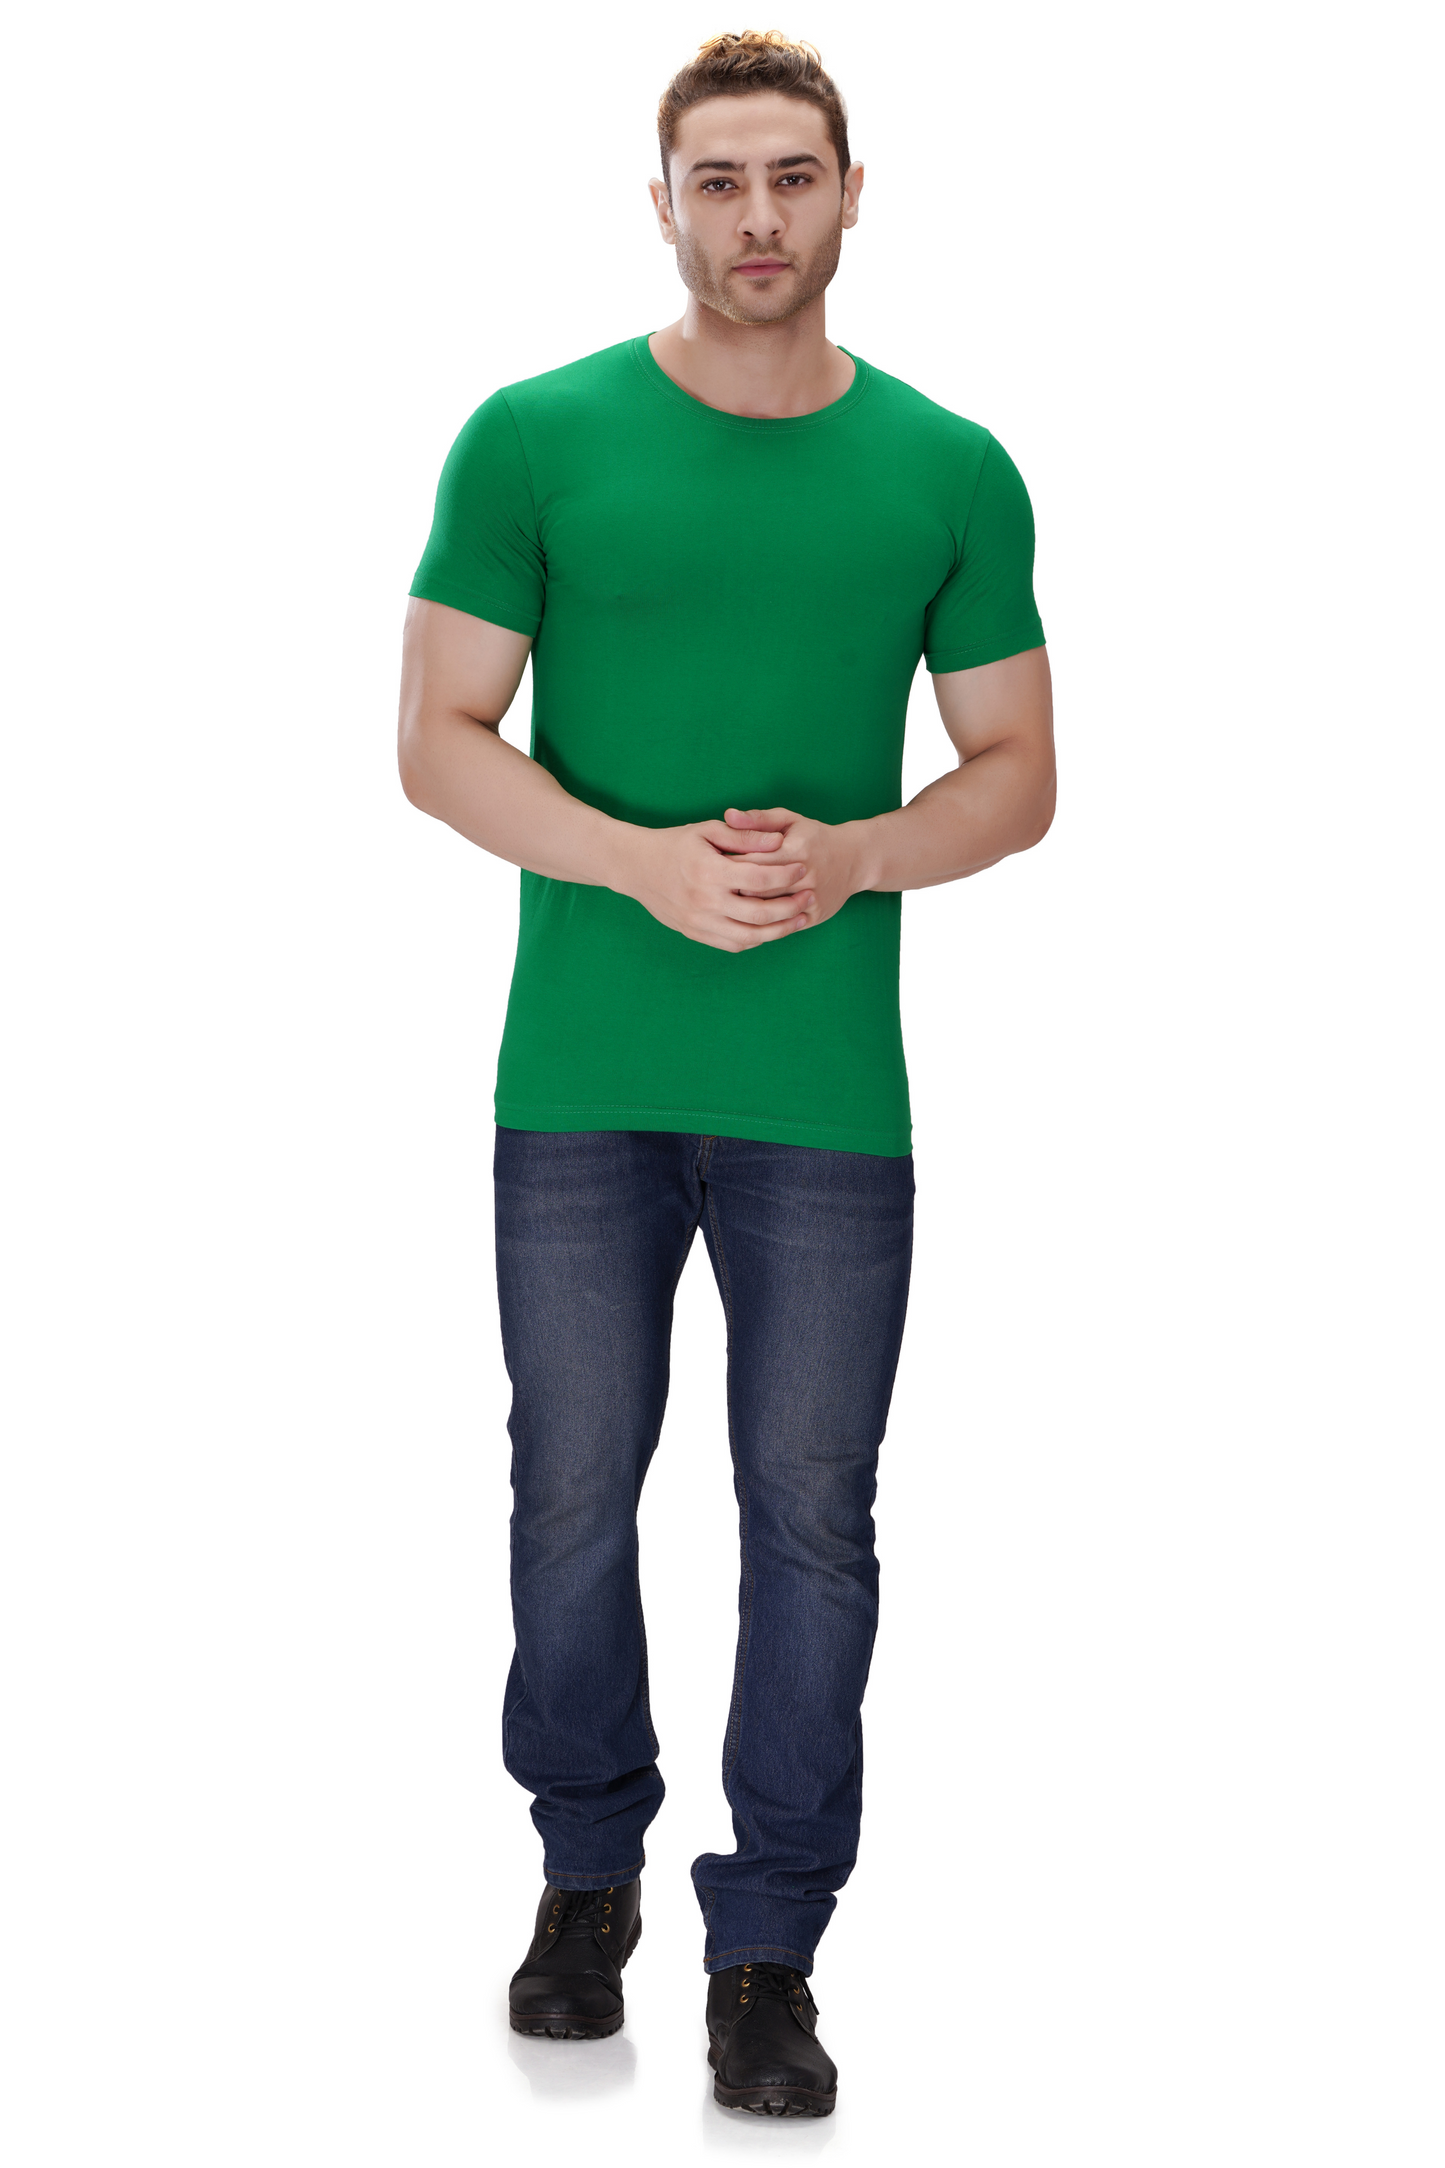 100% Cotton Men’s Half Sleeve T-Shirt - Parrot Green